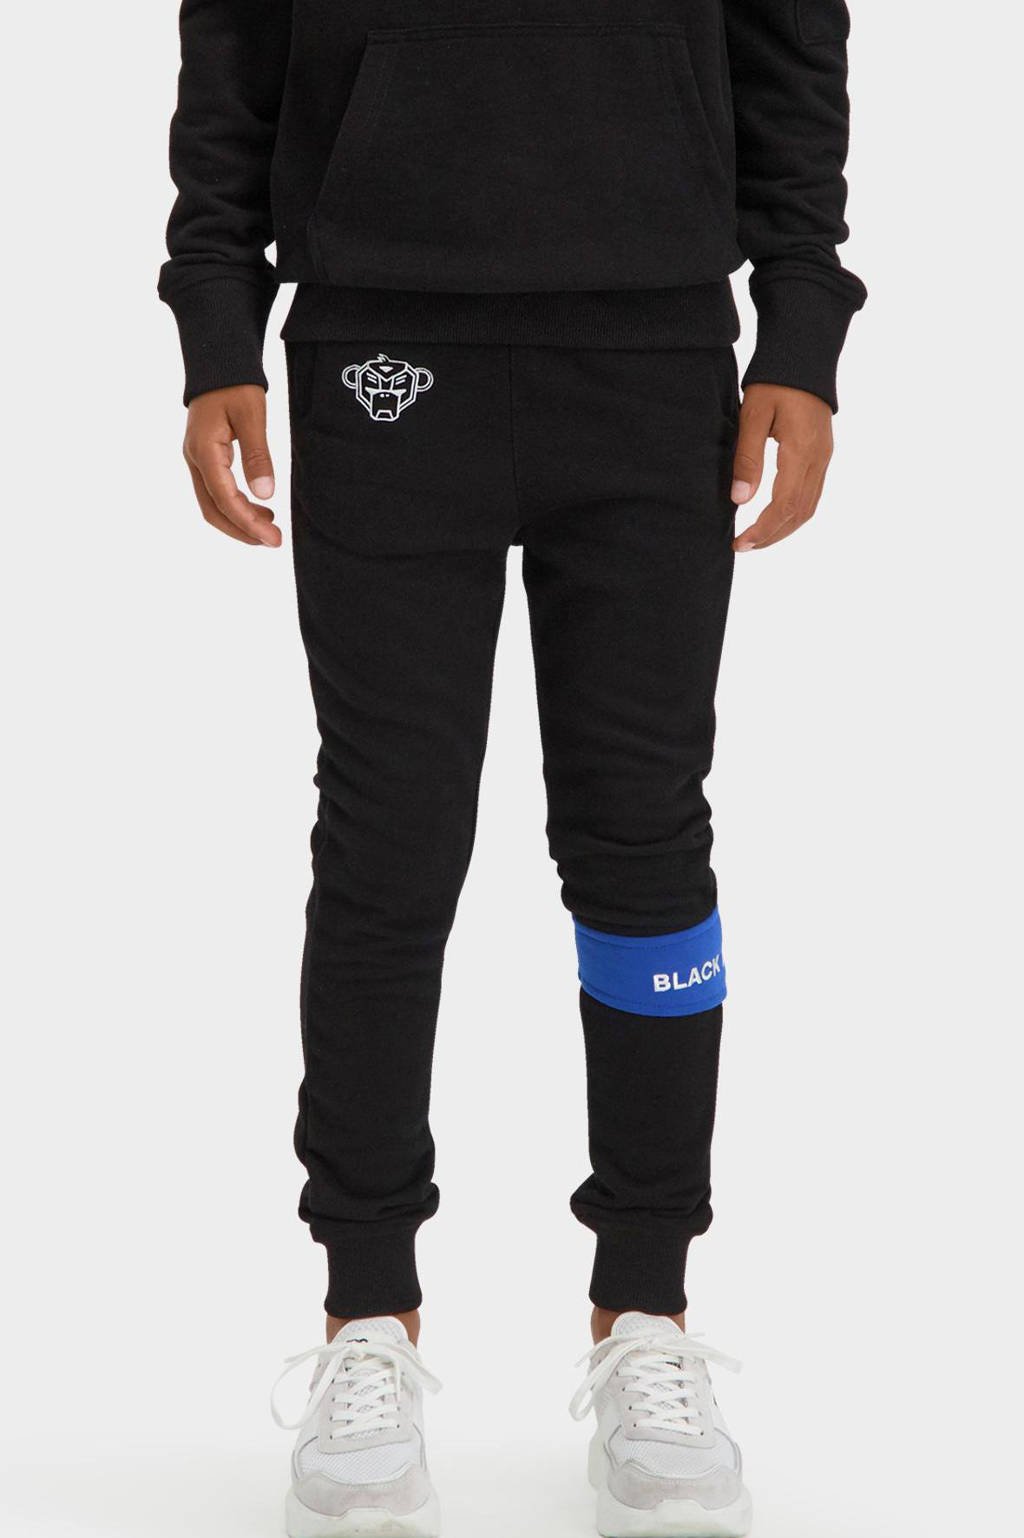 BLACK BANANAS unisex regular fit broek met logo zwart/blauw, Zwart/blauw